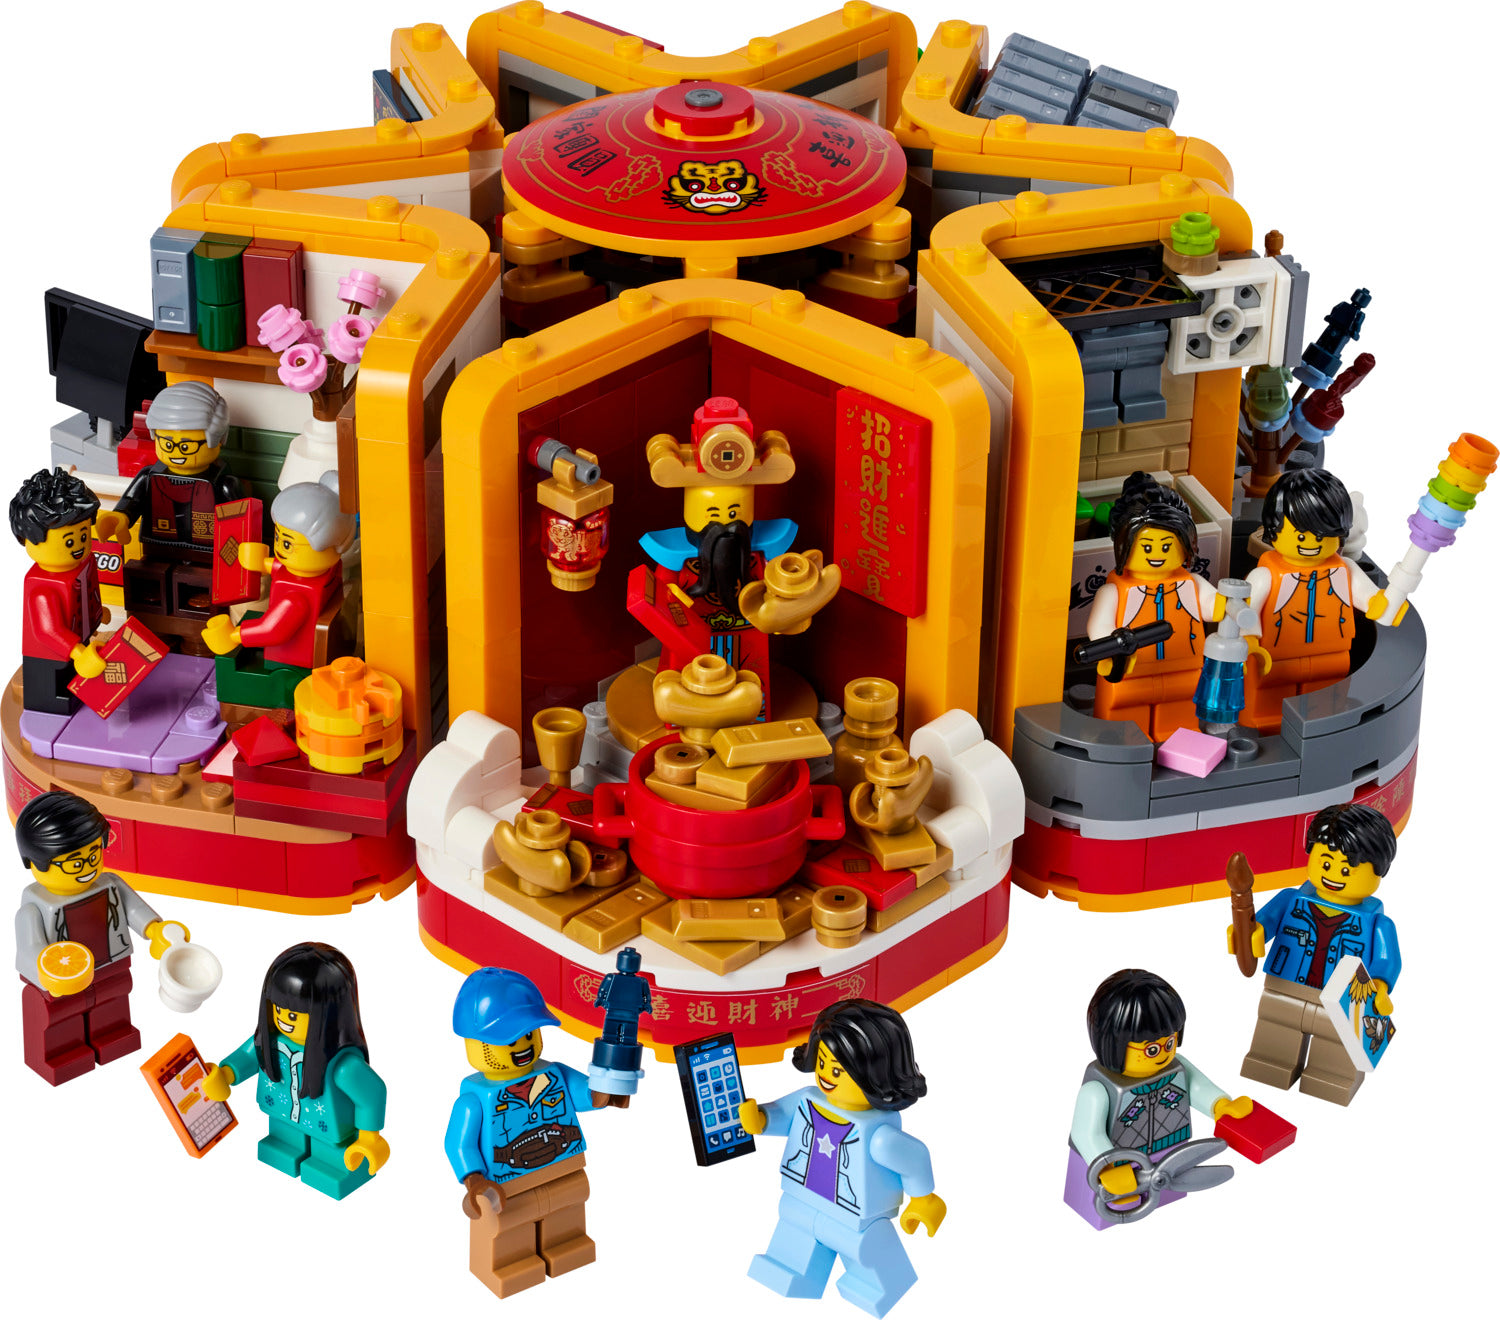 LEGO: Lunar New Year Traditions